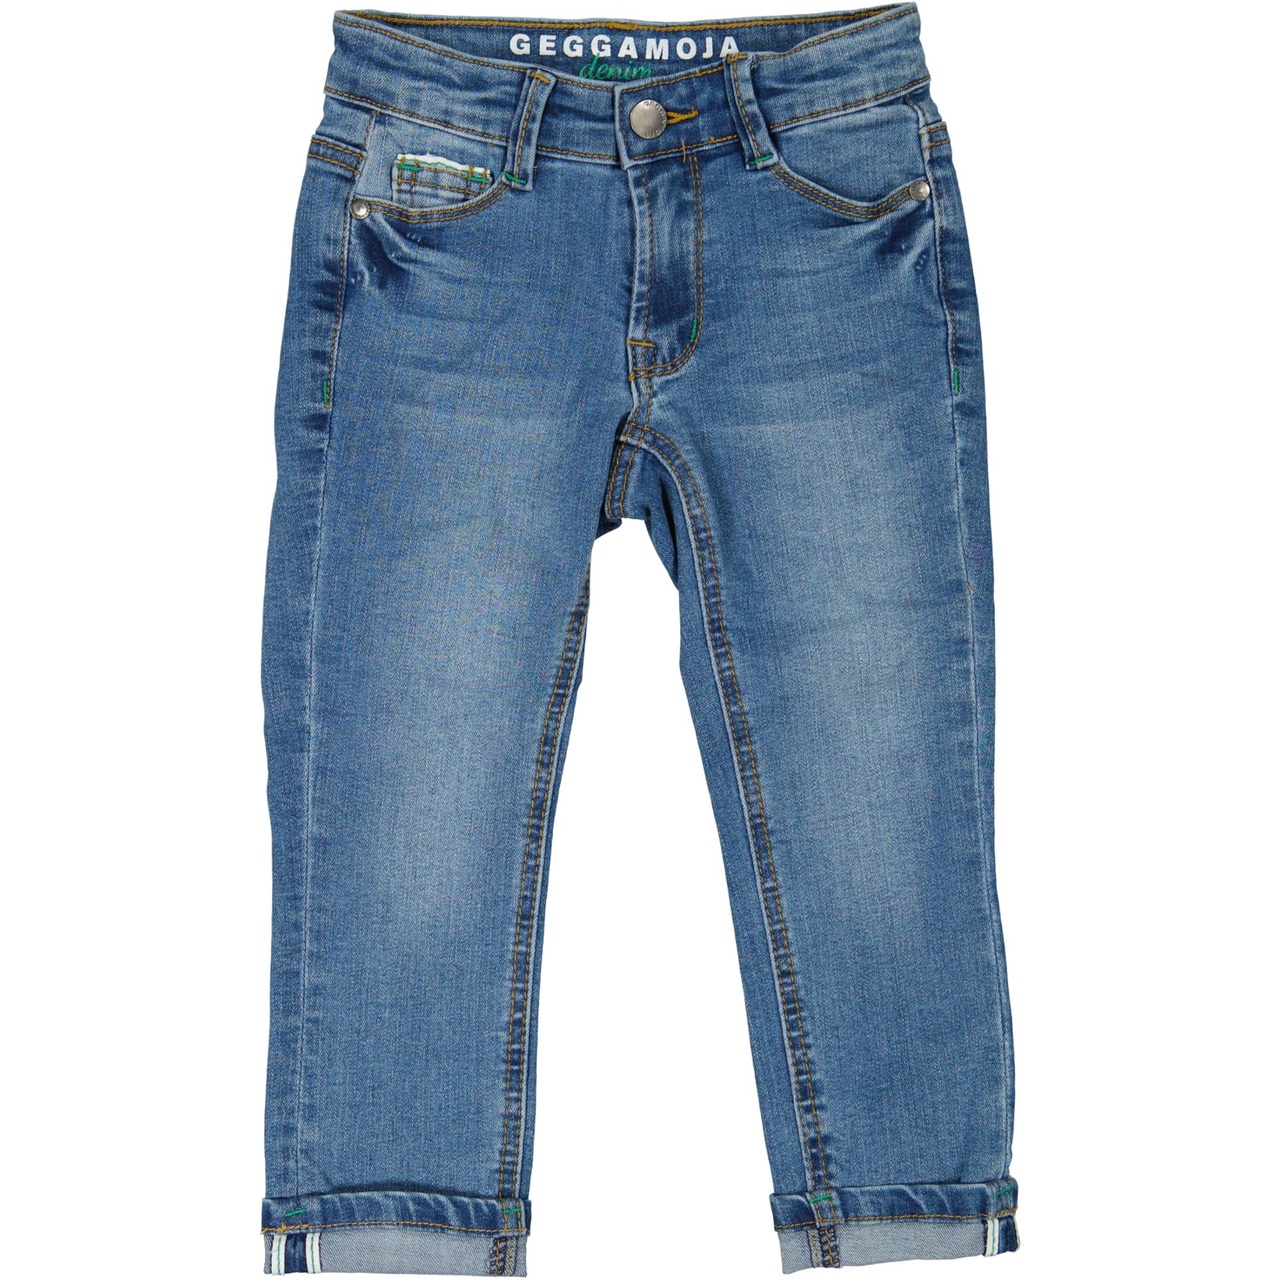 Unisex 5-pocket jeans Denim blue wash 146/152